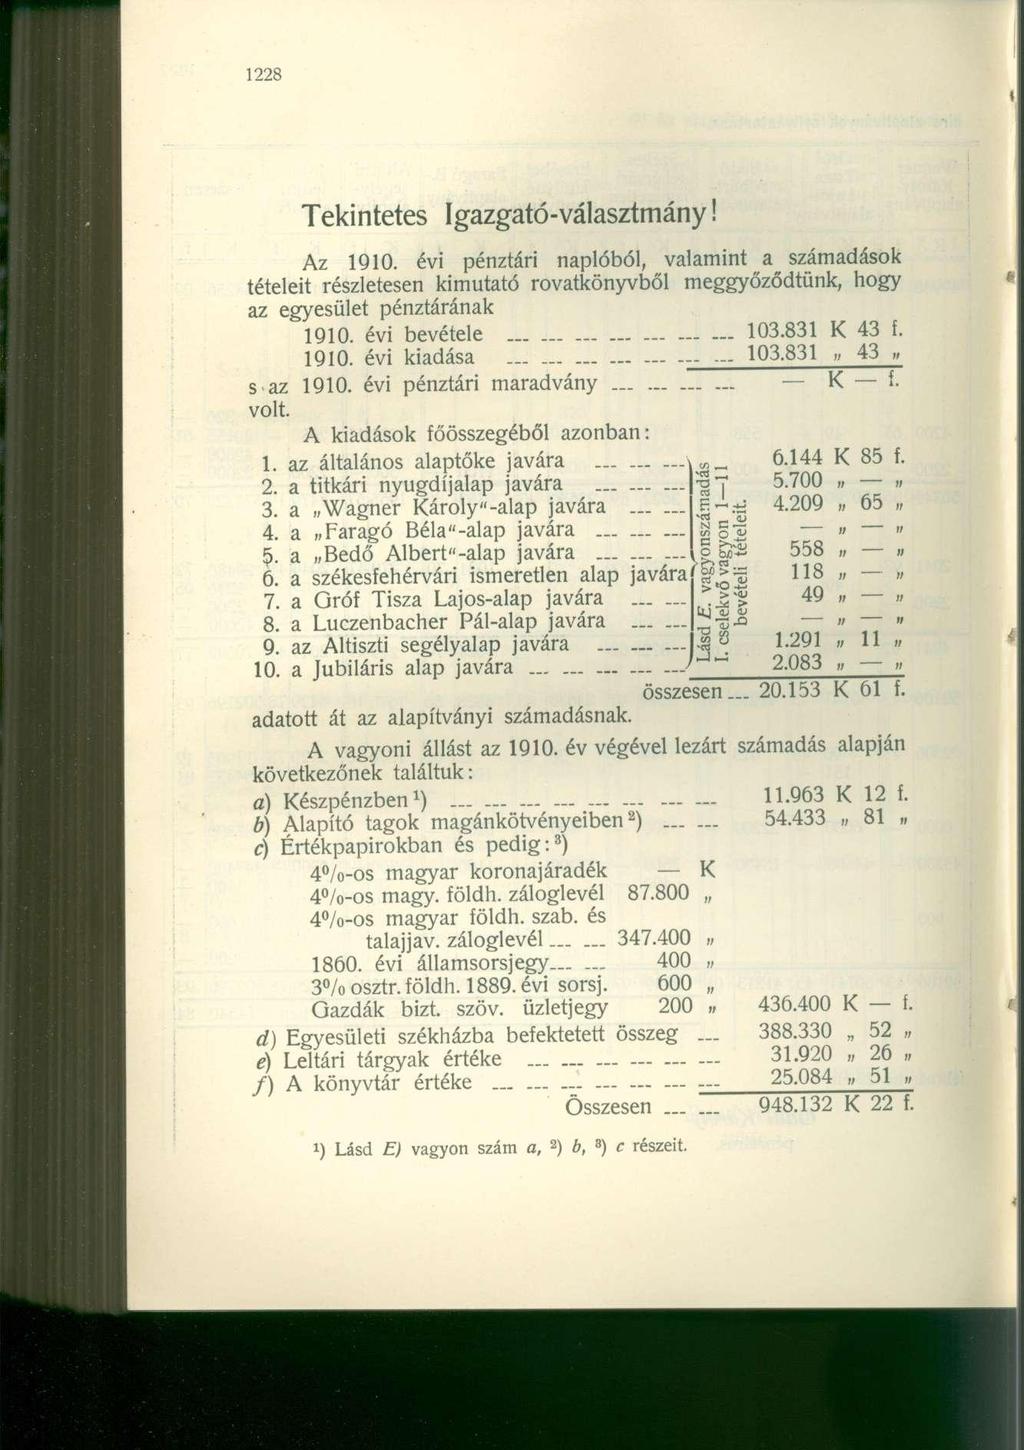 Tekintetes Igazgató-választmány Az 1910. évi pénztári naplóból, valamint a számadások tételeit részletesen kimutató rovatkönyvből meggyőződtünk, hogy az egyesület pénztárának 1910. évi bevétele 103.